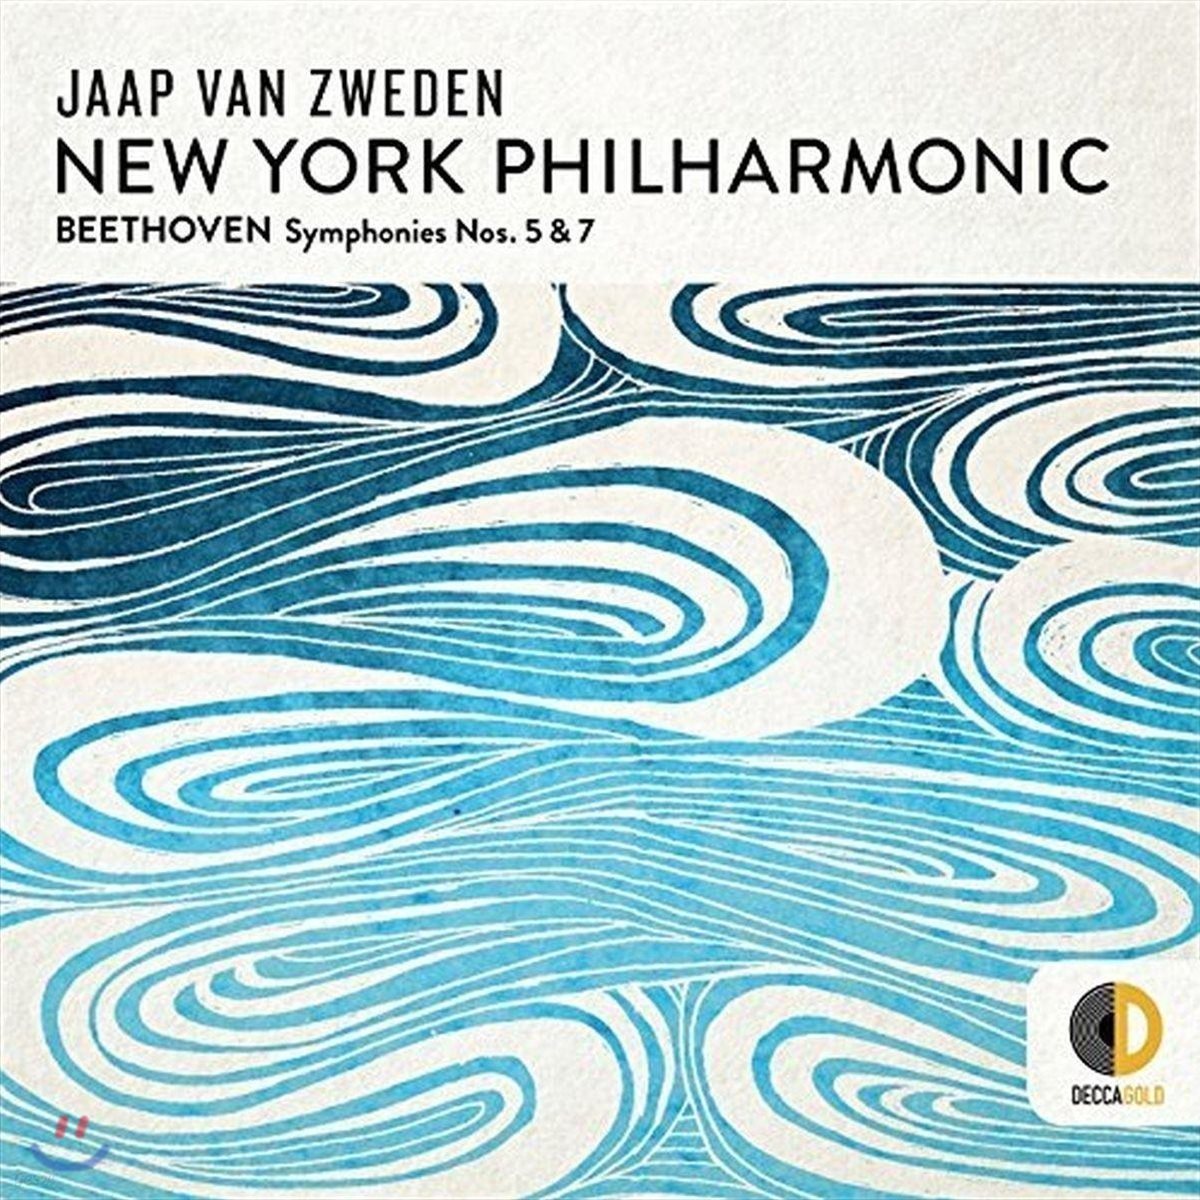 Jaap van Zweden 베토벤: 교향곡 5 &amp; 7번 (Beethoven: Symphonies Nos. 5 &amp; 7)